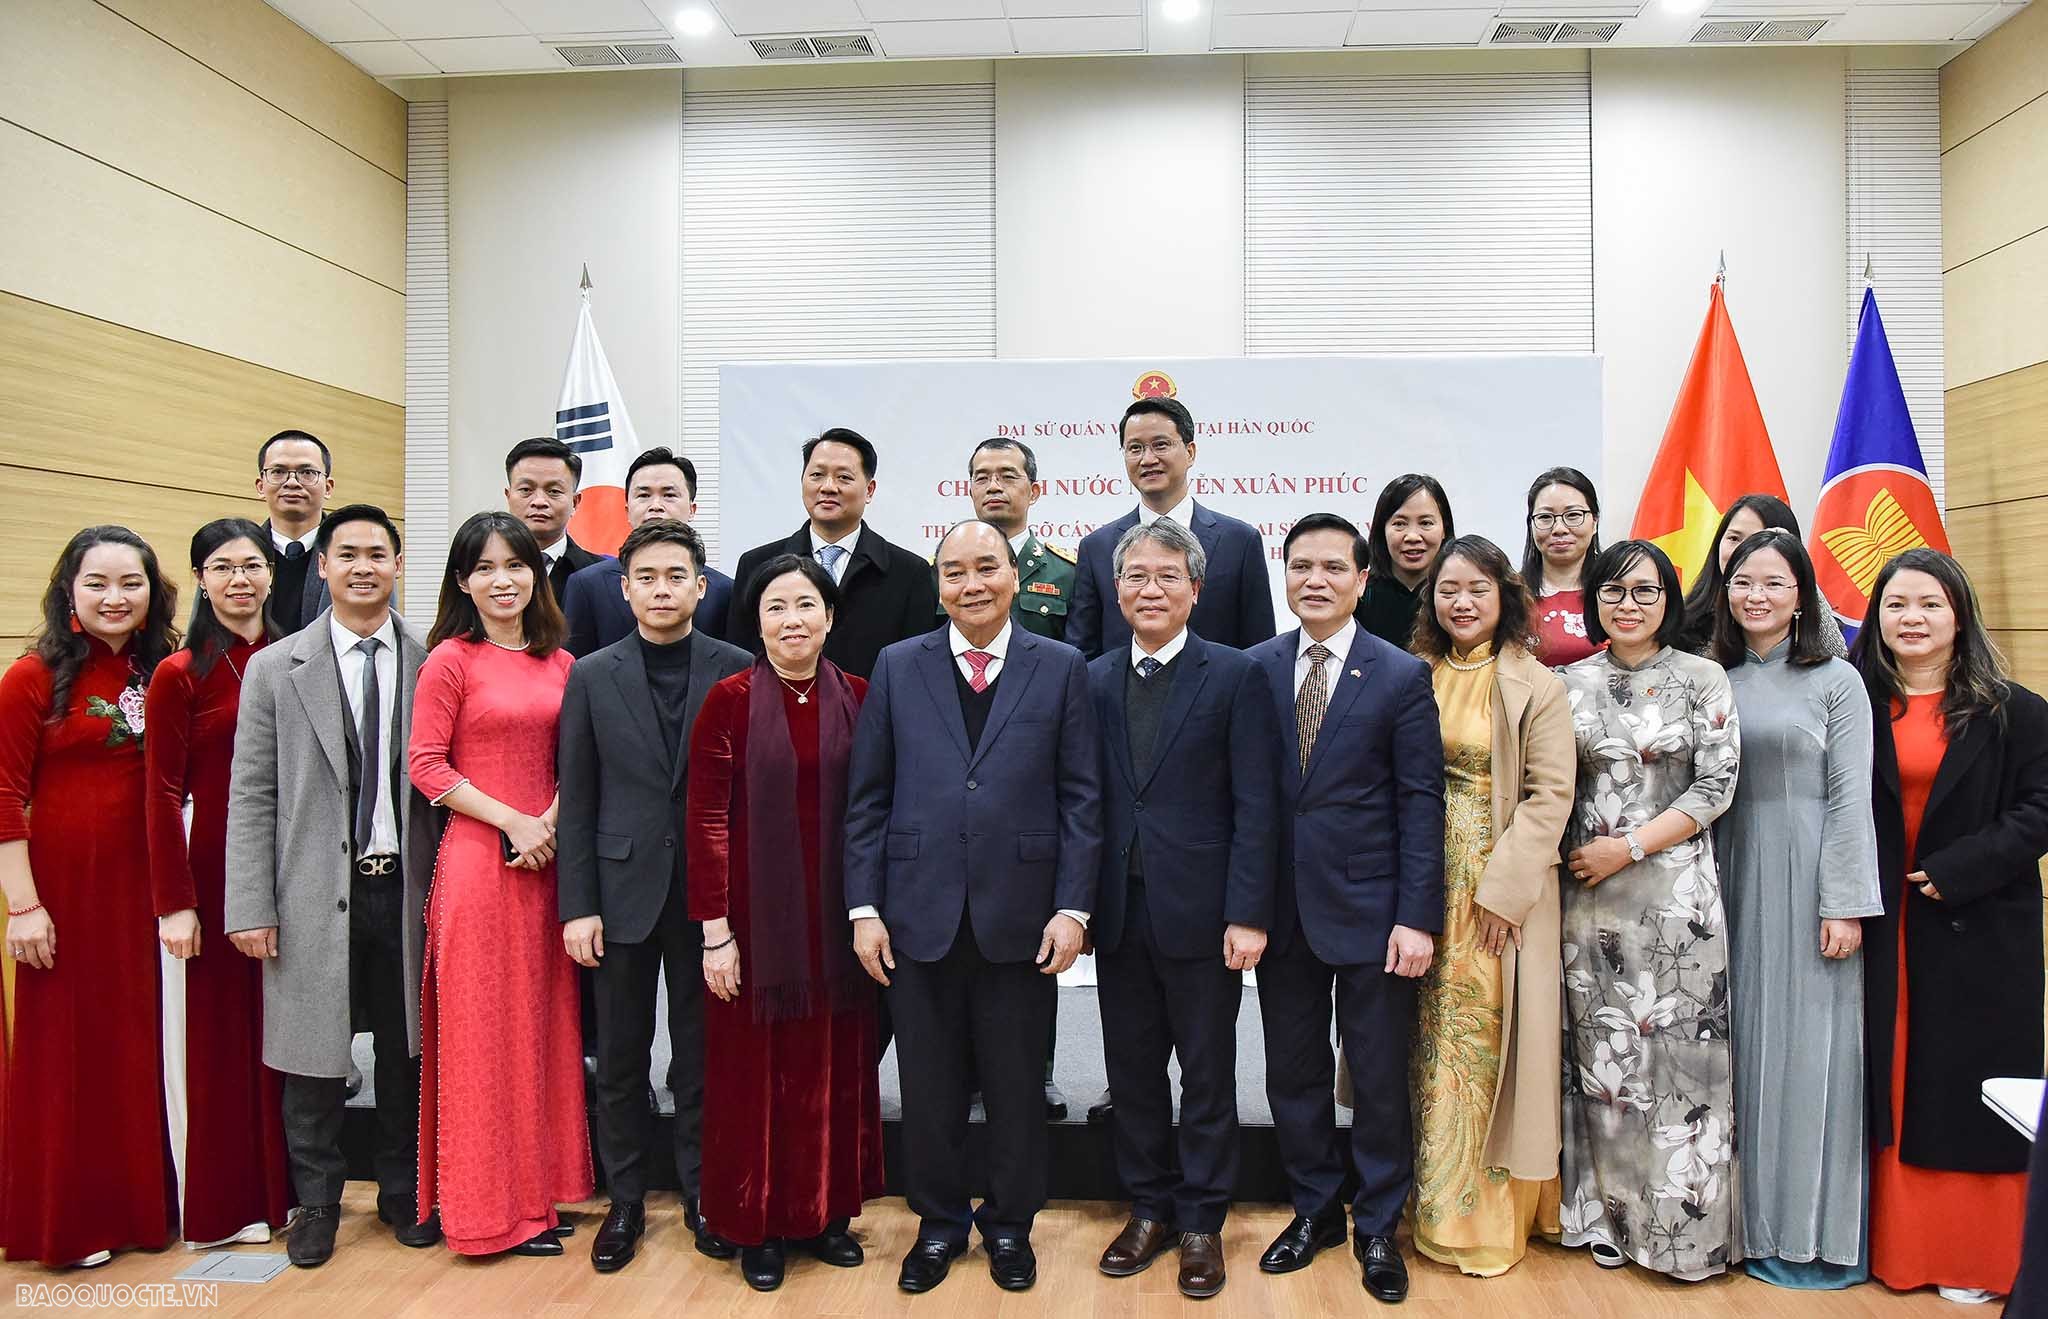 Chủ tịch nước: Cần nâng tầm trí tuệ Việt tại đất nước phát triển như Hàn Quốc